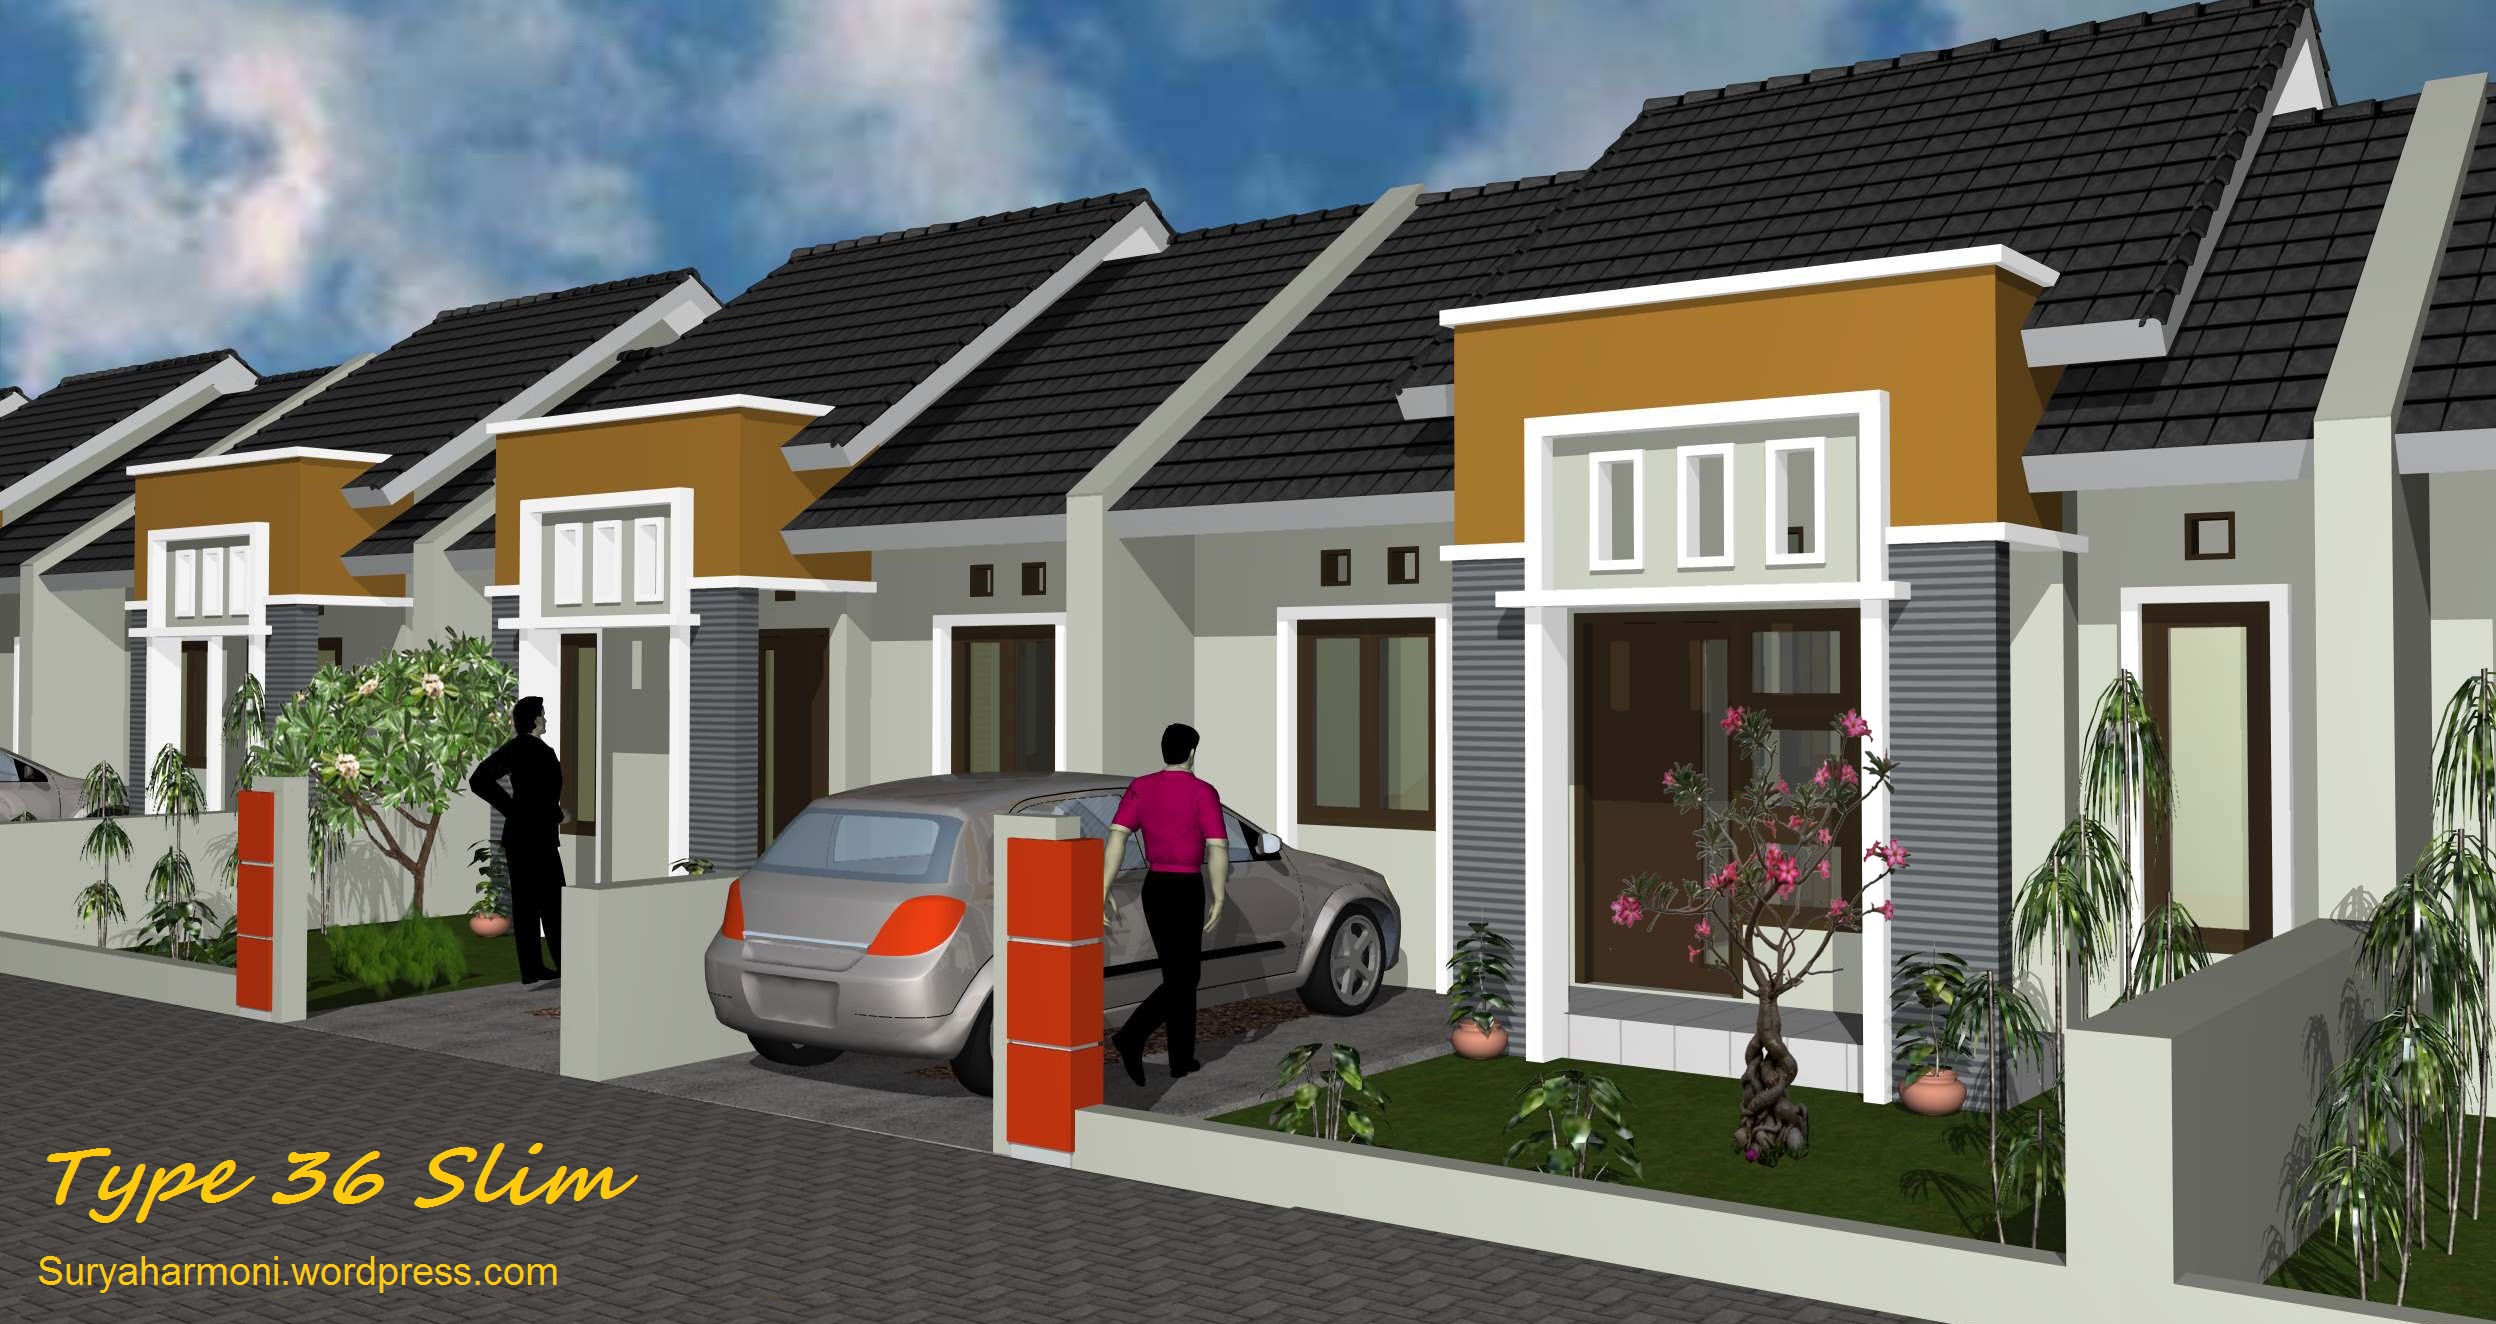 100 Rumah Minimalis Sederhana Type 36 Surabaya Gambar Desain Rumah